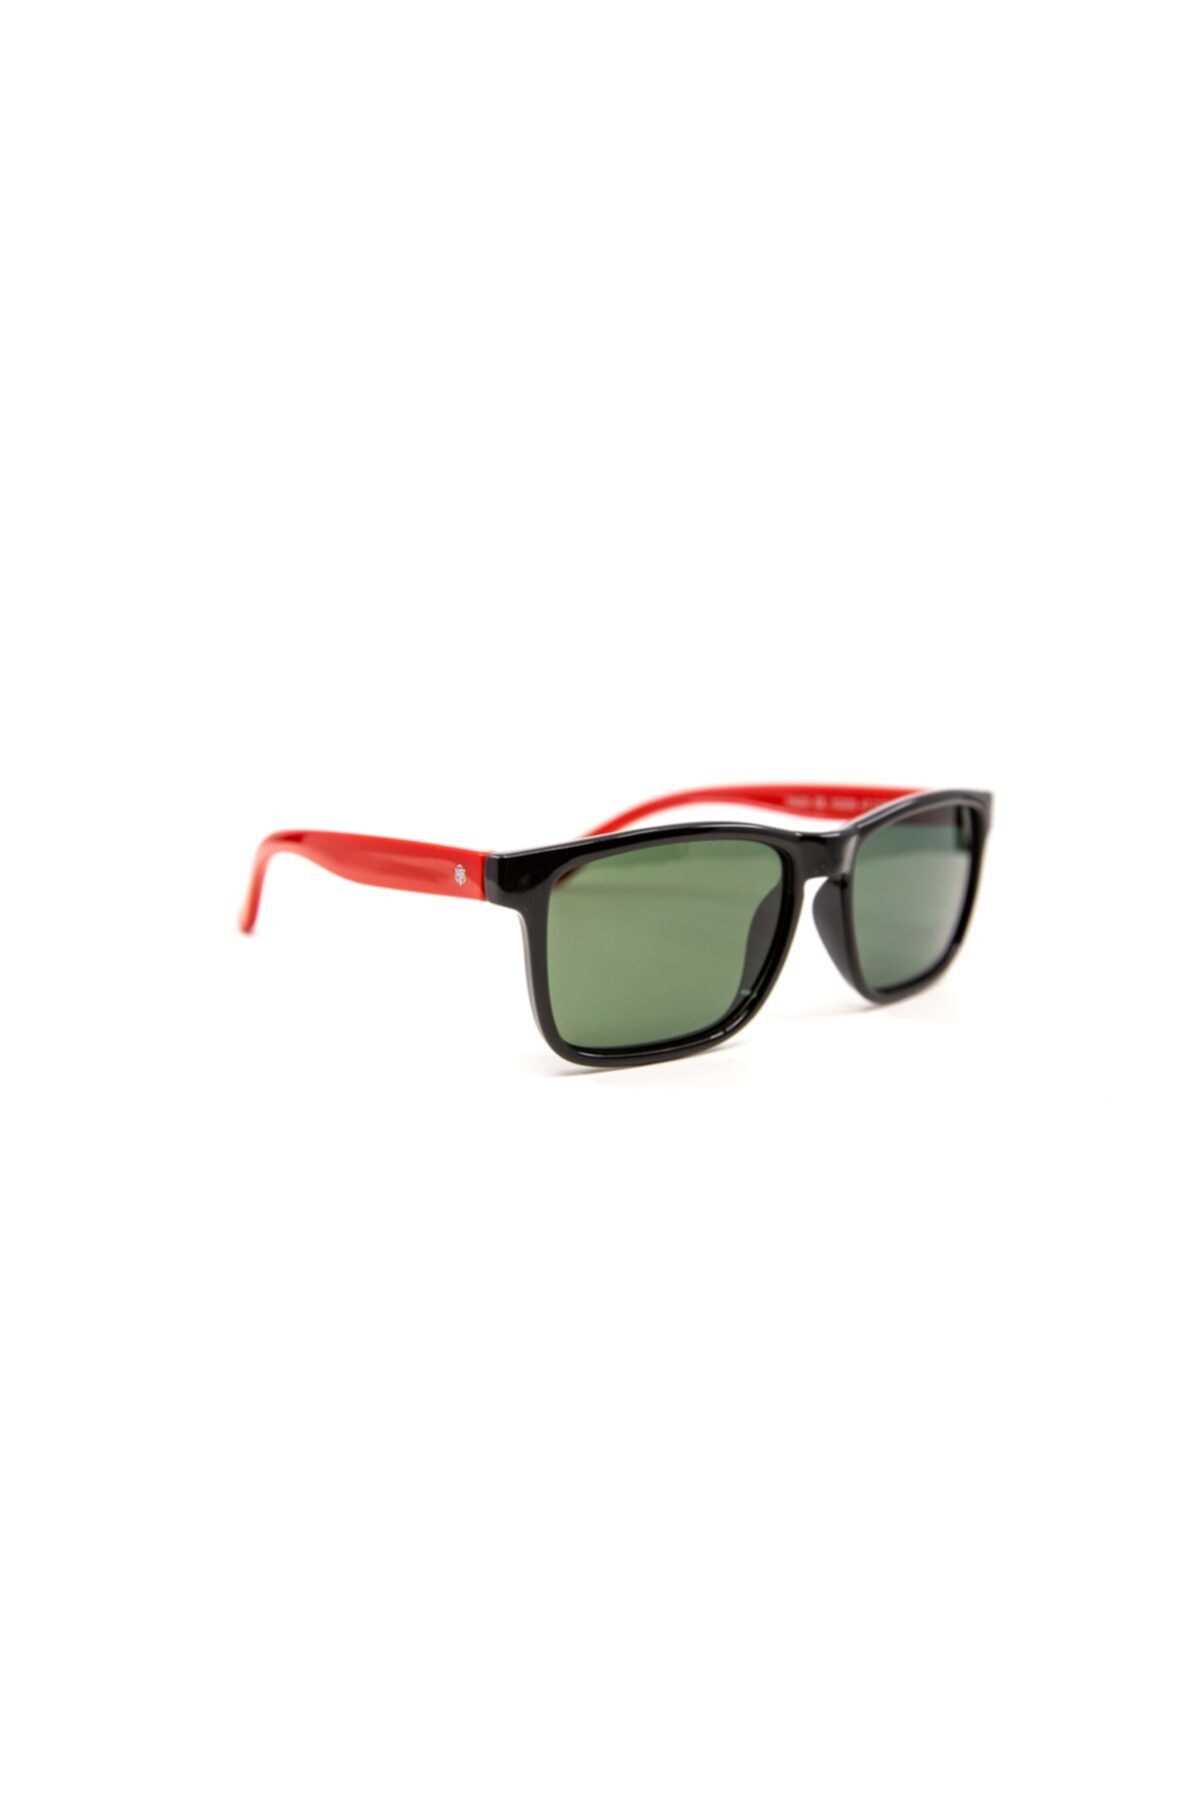 خرید انلاین عینک آفتابی پسرانه 2021 برند YAGO کد ty51460260